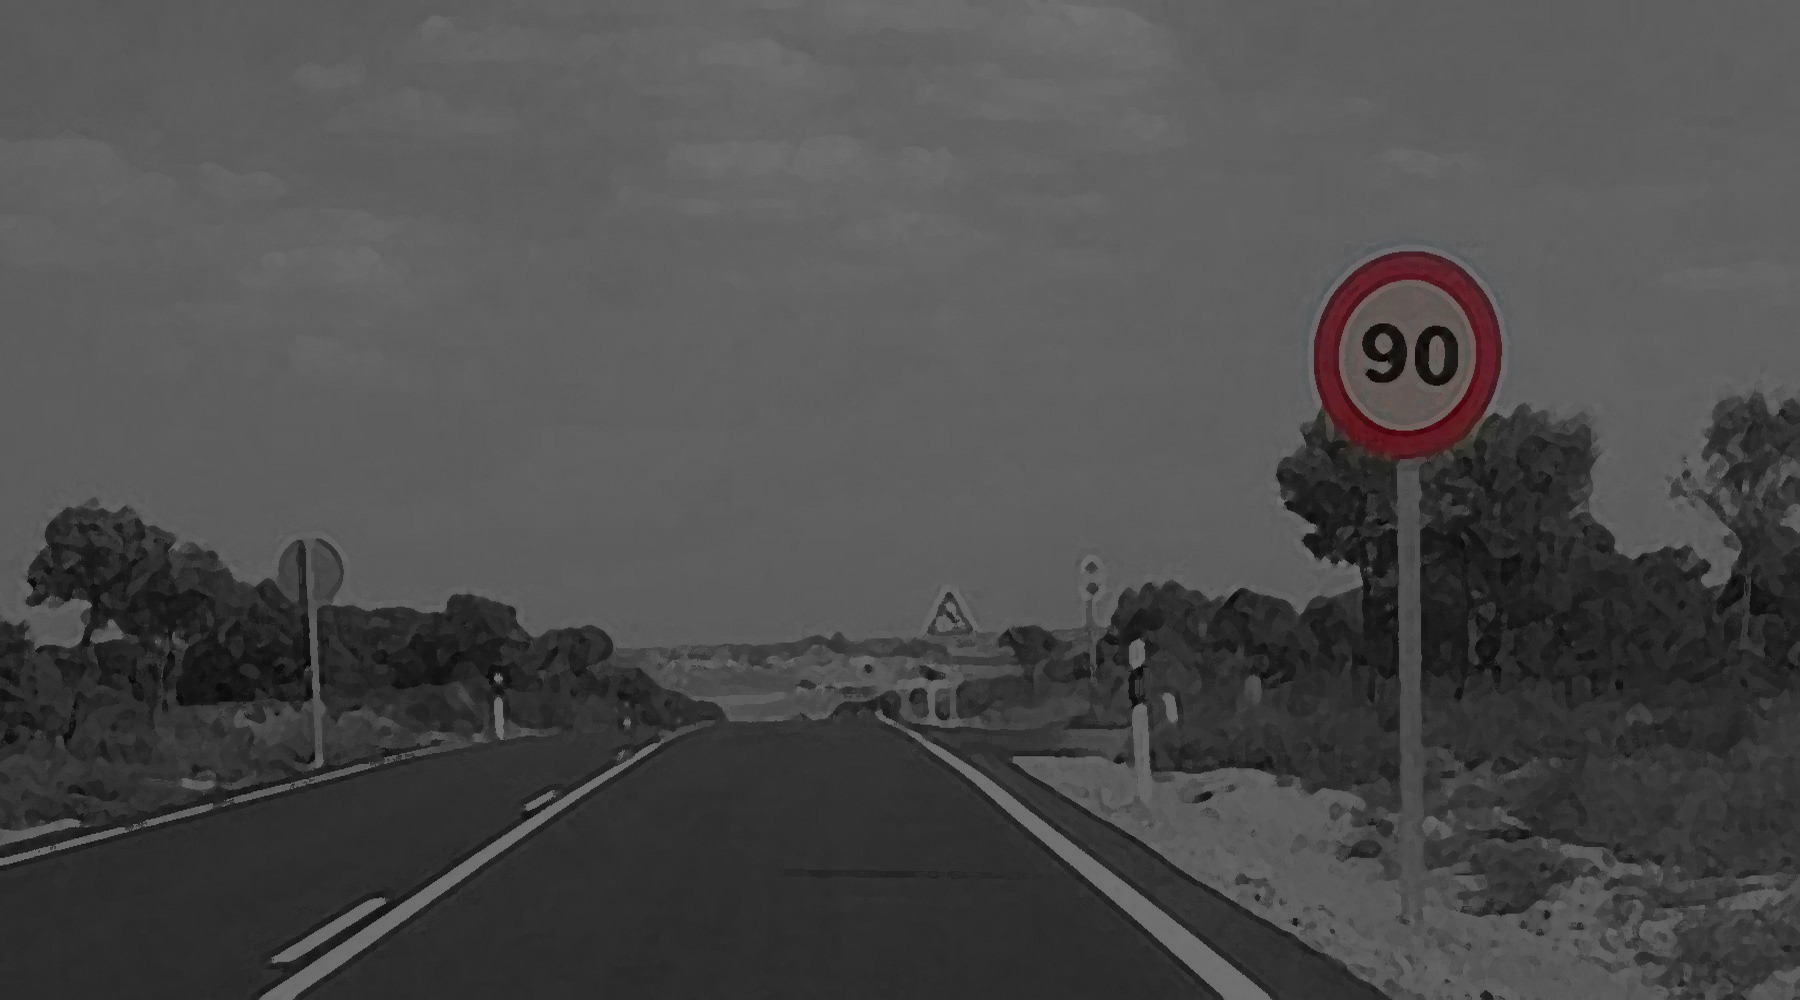 Los nuevos límites de velocidad: 90 km/h en carreteras convencionales